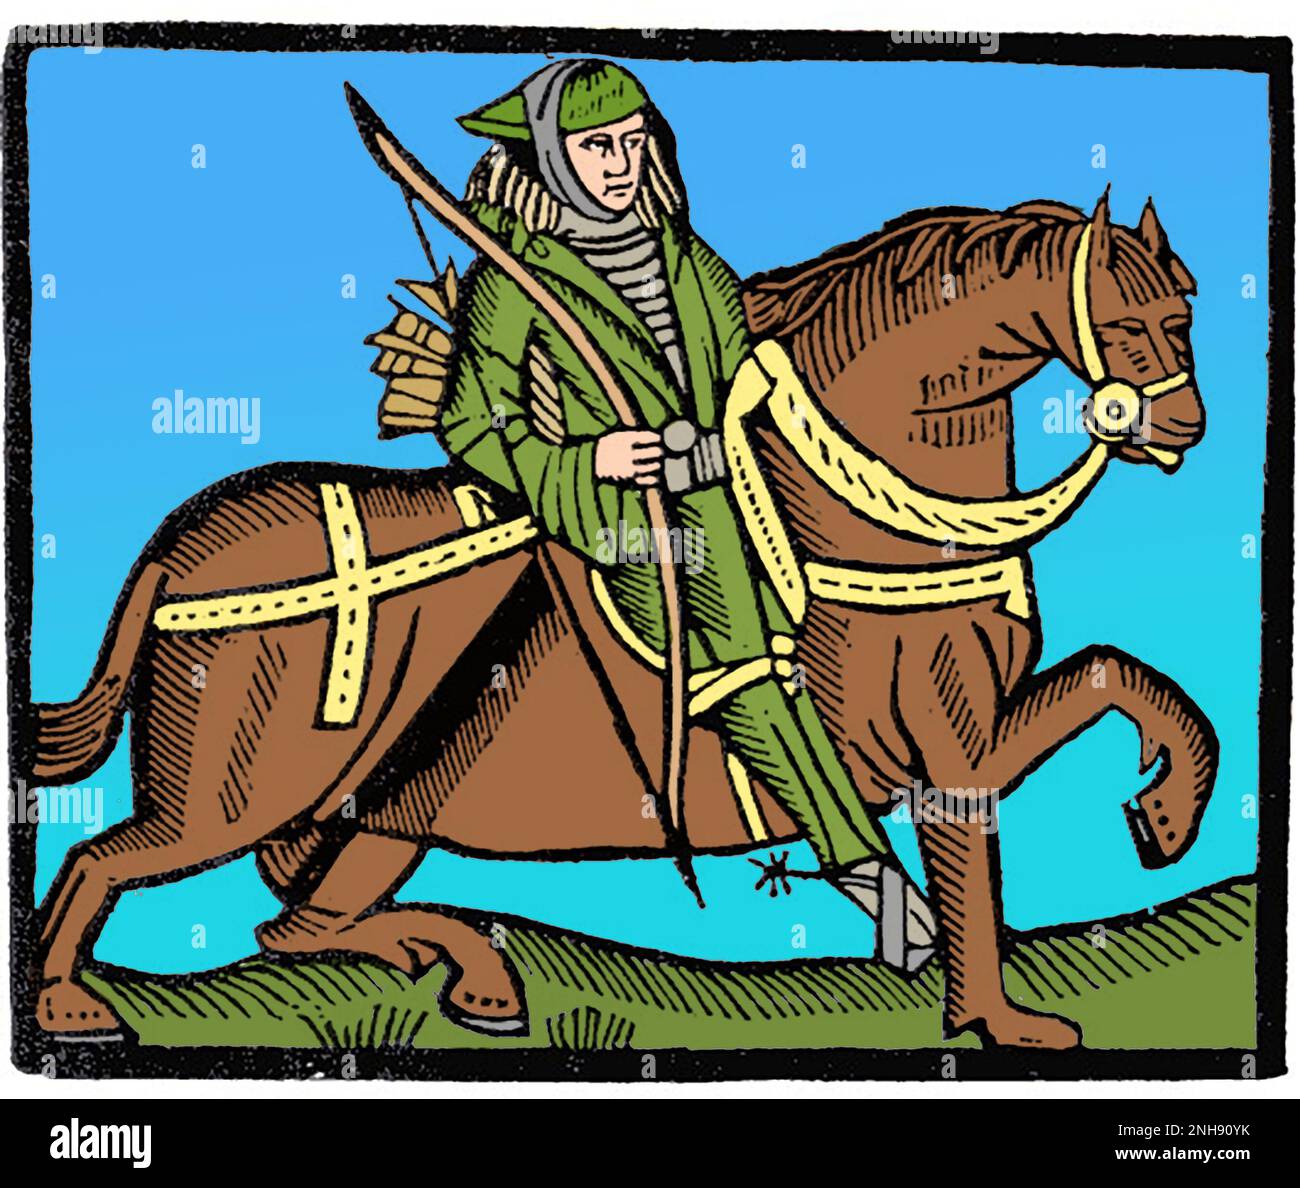 Robin Hood sur un cheval, illustration de la pièce de Robin des Bois et du shérif, c. 1475. Robin Hood était une figure populaire à la fin du Moyen-âge, qui aurait volé les riches et donné aux pauvres. Les ballades les plus connues avec lui sont du 15th siècle. Colorisé. Banque D'Images